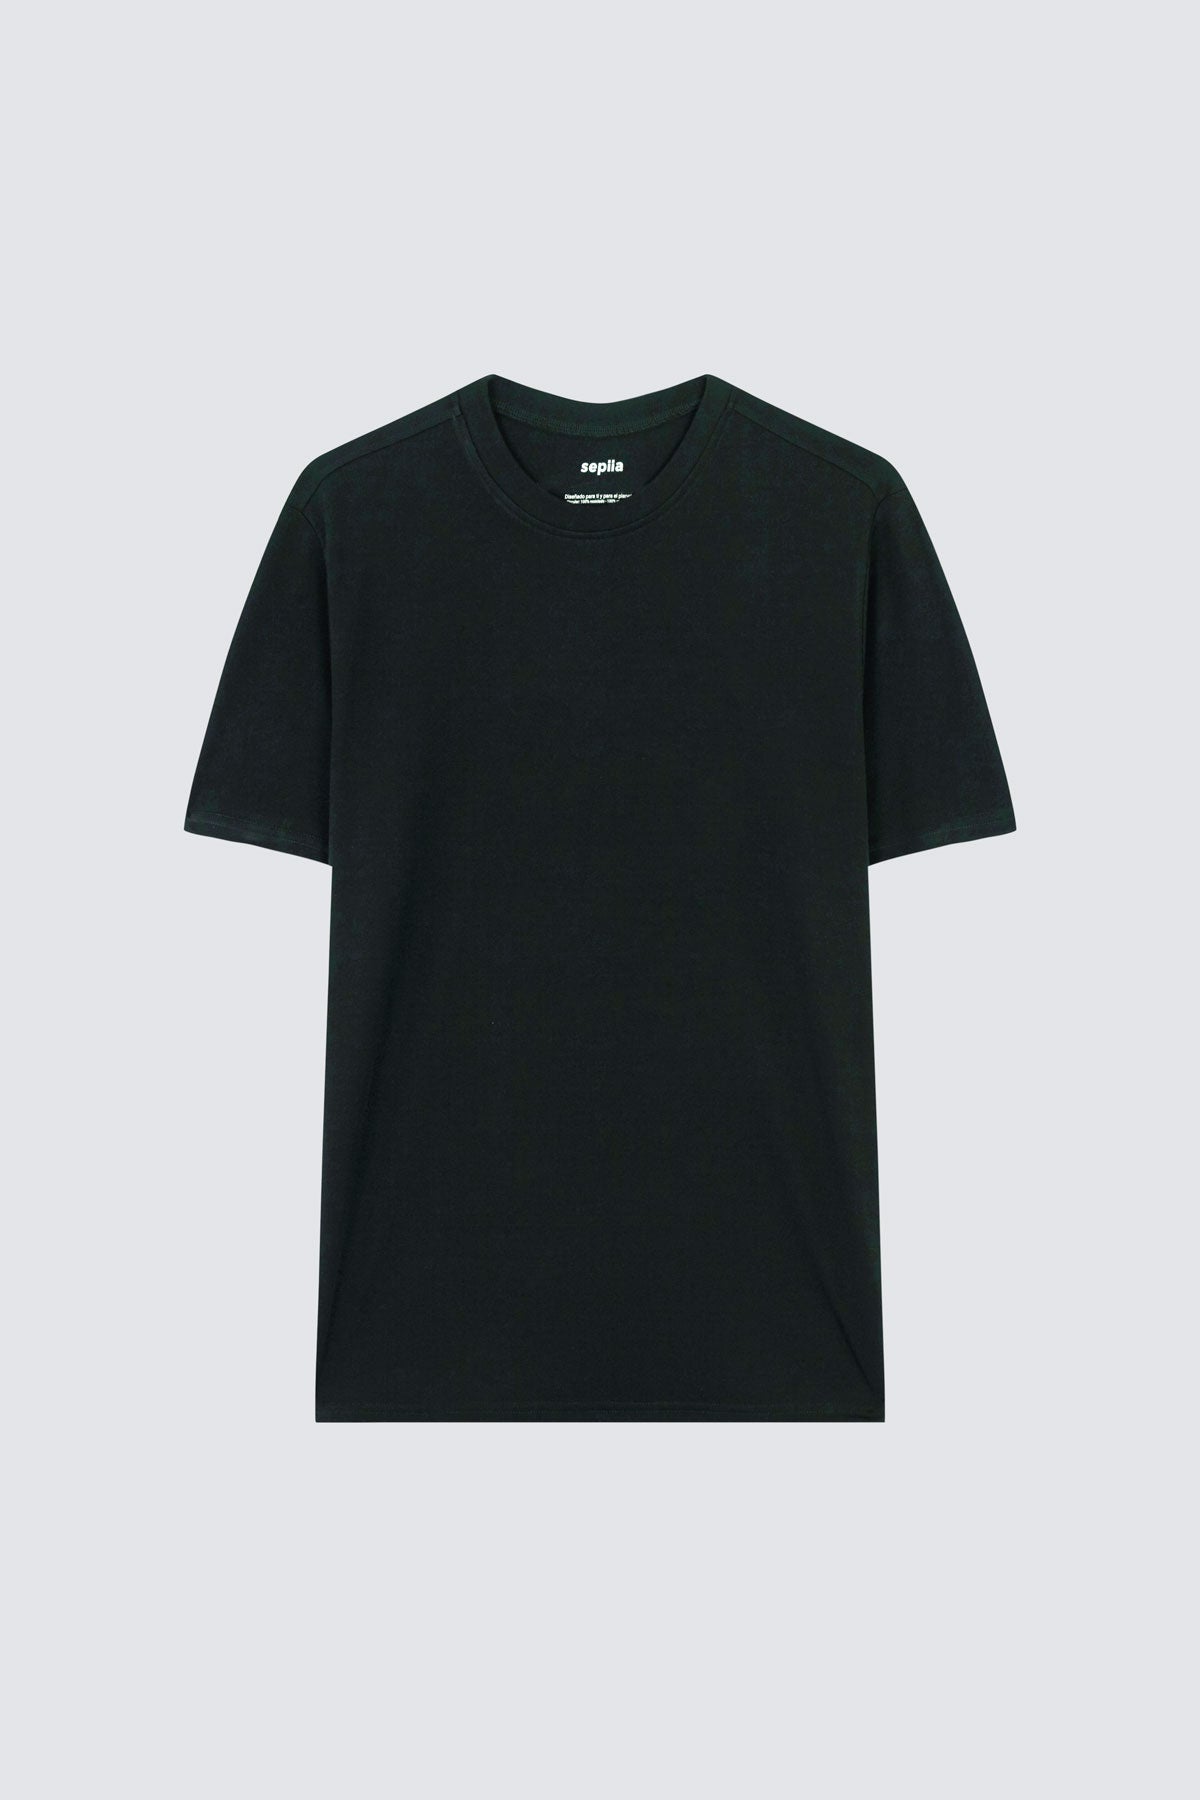 Camiseta de hombre en negro de Sepiia, suave y cómoda, perfecta para cualquier ocasión. Foto prenda en plano